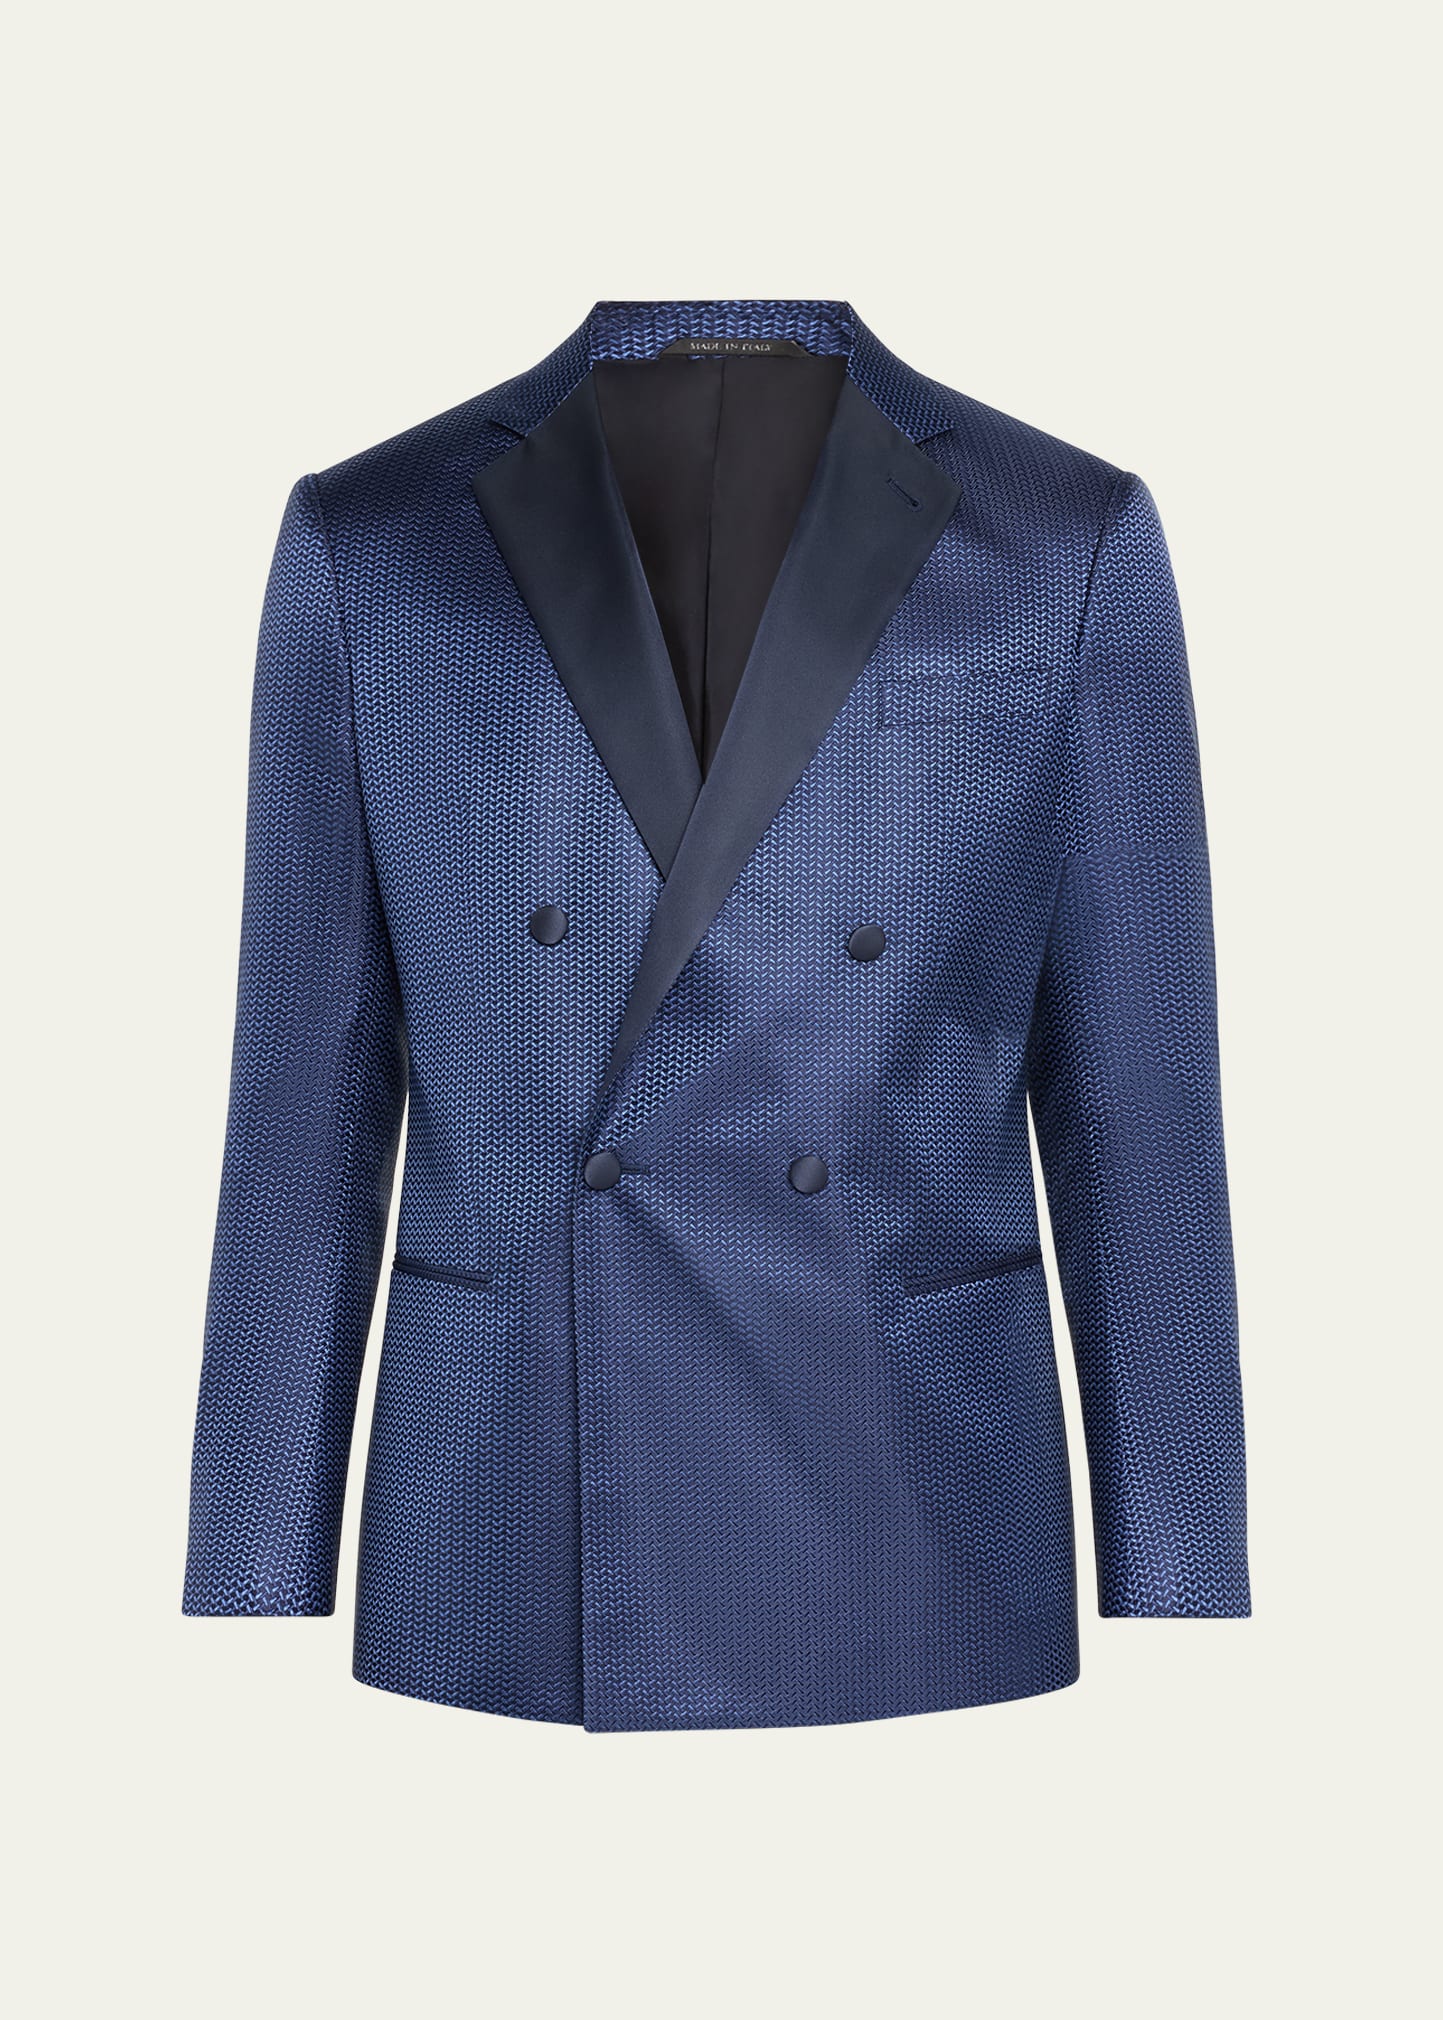 Shop Giorgio Armani Men's Chevron Double-breasted Dinner Jacket In Solid Dark Blue